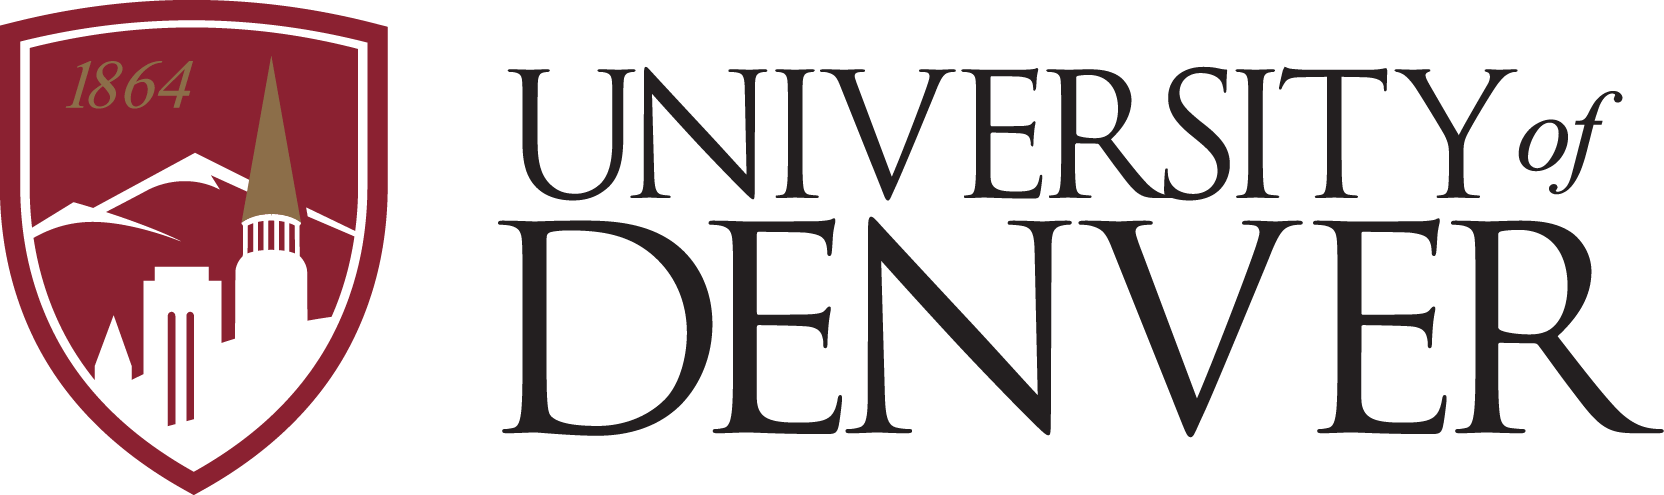 The University of Denver